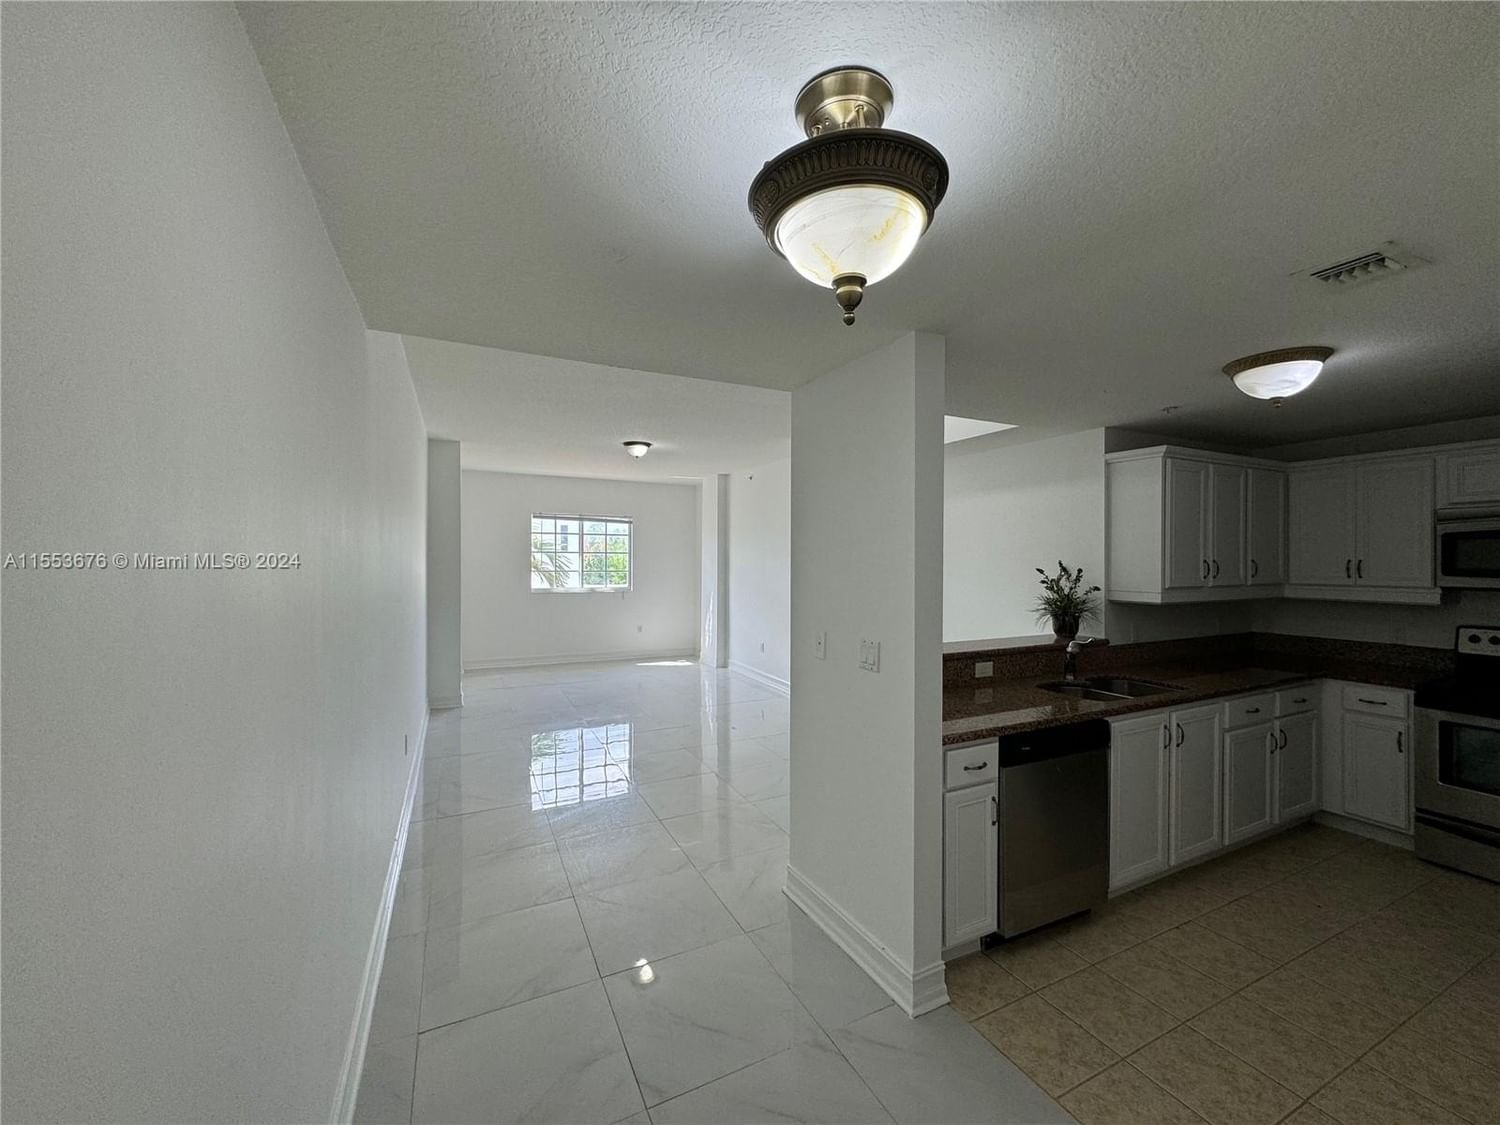 Real estate property located at 5271 8th St #201, Miami-Dade County, GRANADA GRAND CONDO, Miami, FL